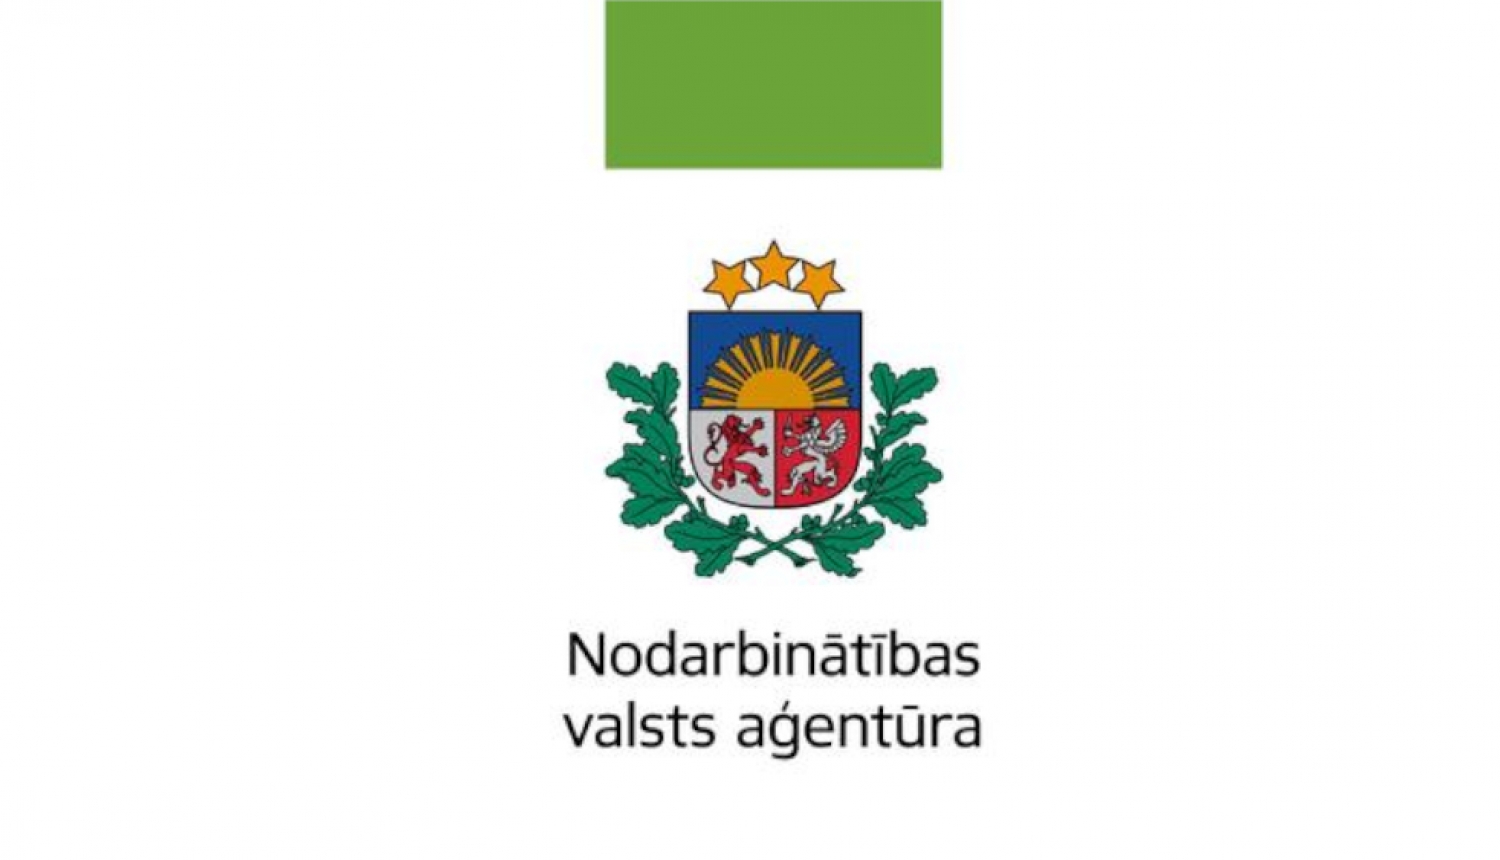 Nodarbinātības valsts aģentūras logo